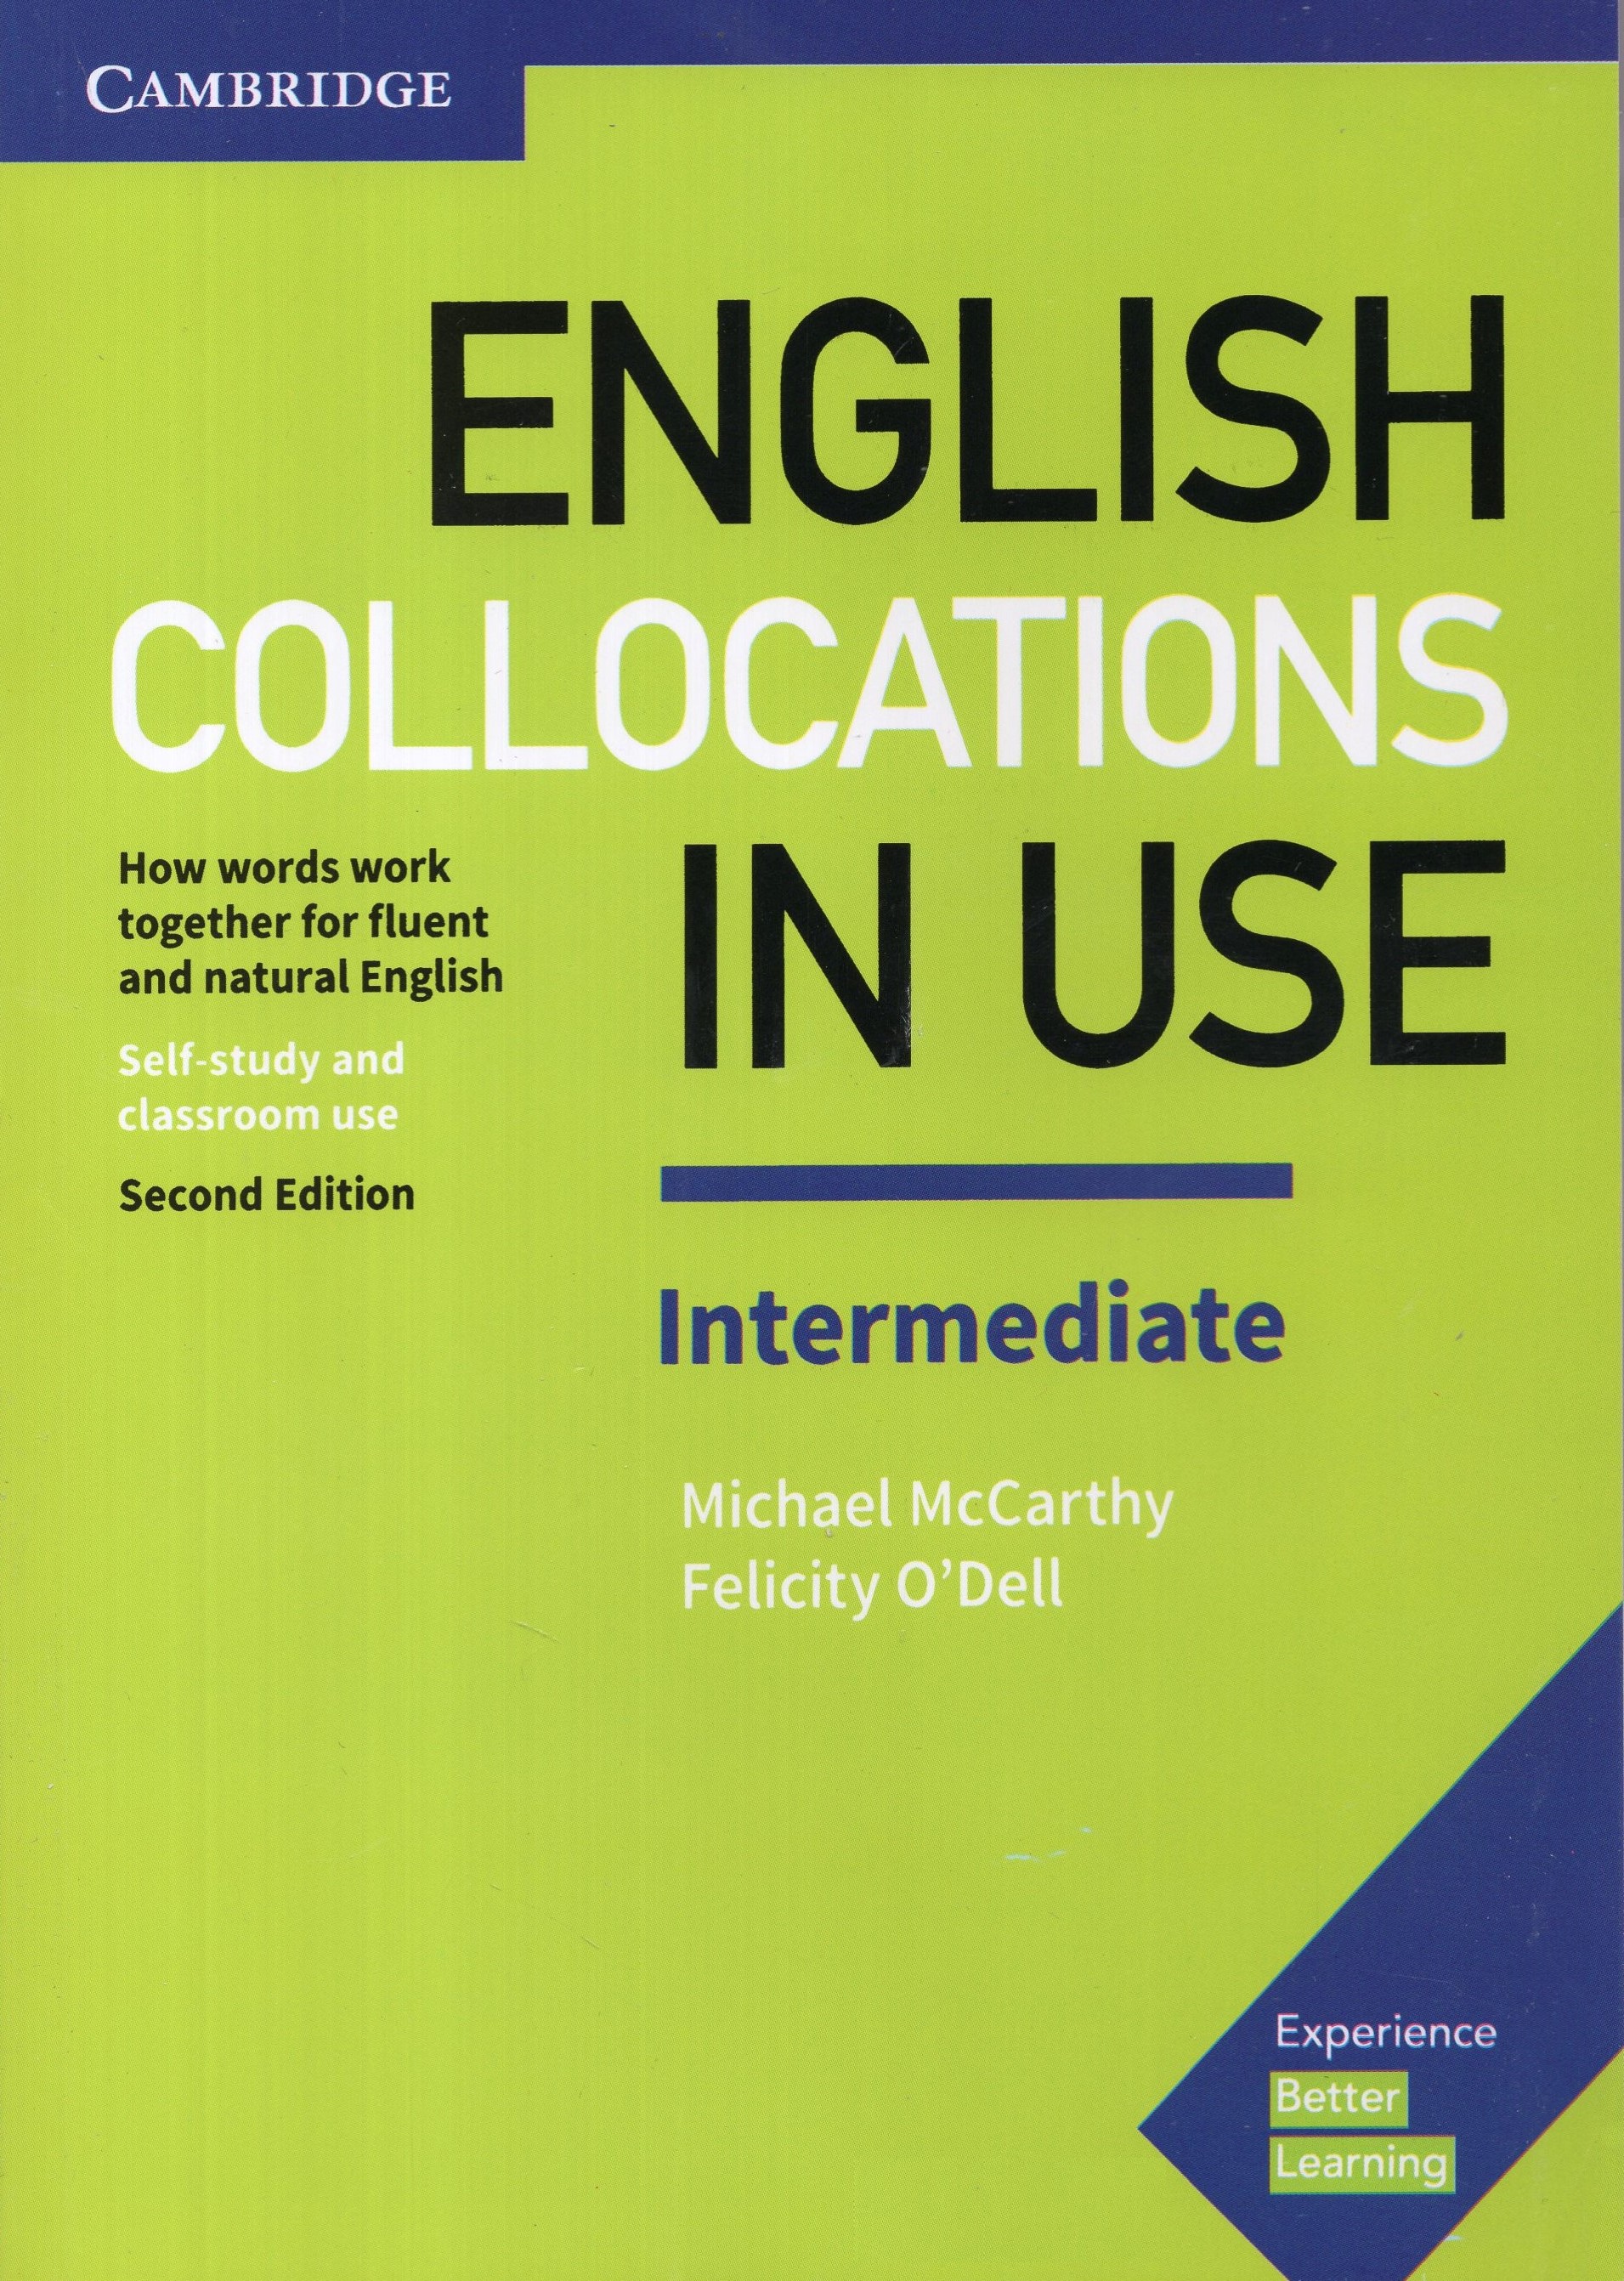 English Collocations In Use Intermediate 2nd Edition(Cambridge)